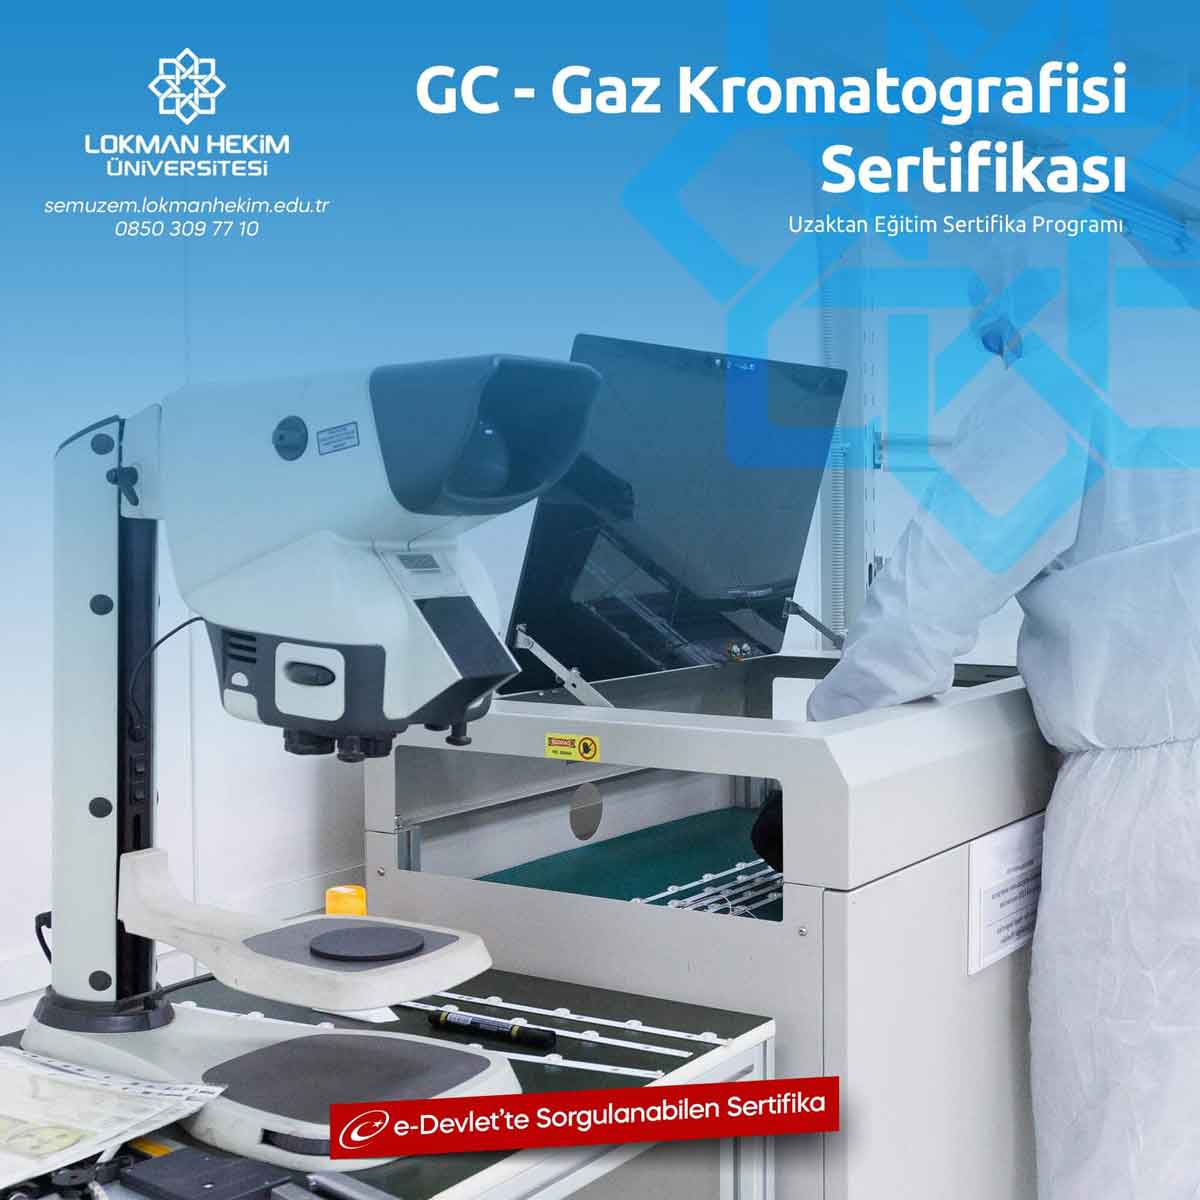 GC - Gaz Kromatografisi Sertifikası Nedir, Nasıl Alınır?